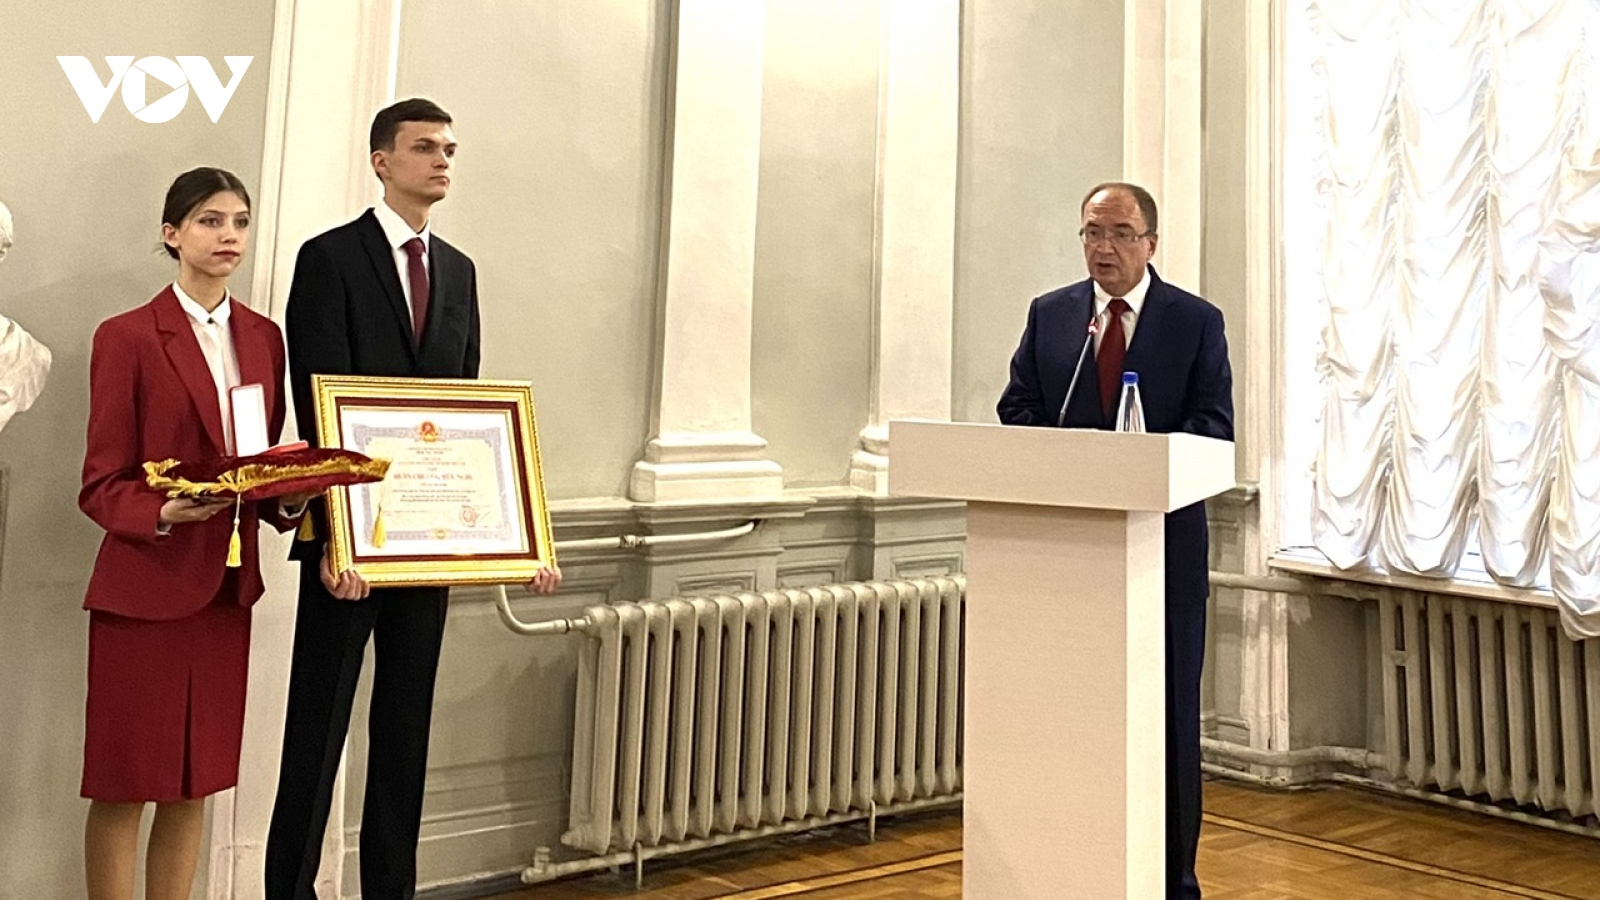 Trao Huân chương Hữu nghị cho Viện Hồ Chí Minh - Đại học Tổng hợp St. Petersburg